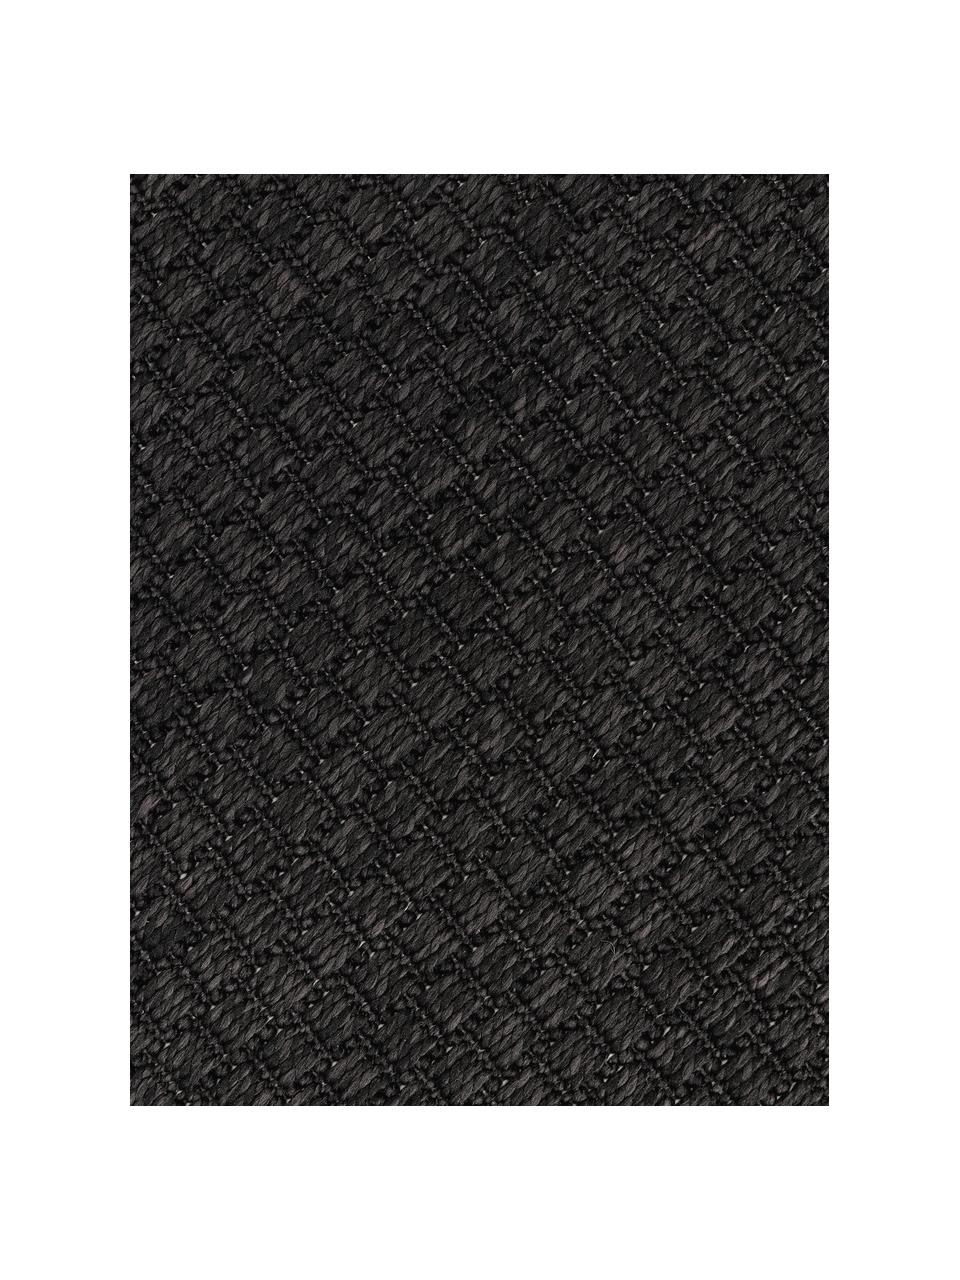 Okrągły dywan wewnętrzny/zewnętrzny Toronto, 100% polipropylen, Antracytowy, Ø 120 cm (Rozmiar S)